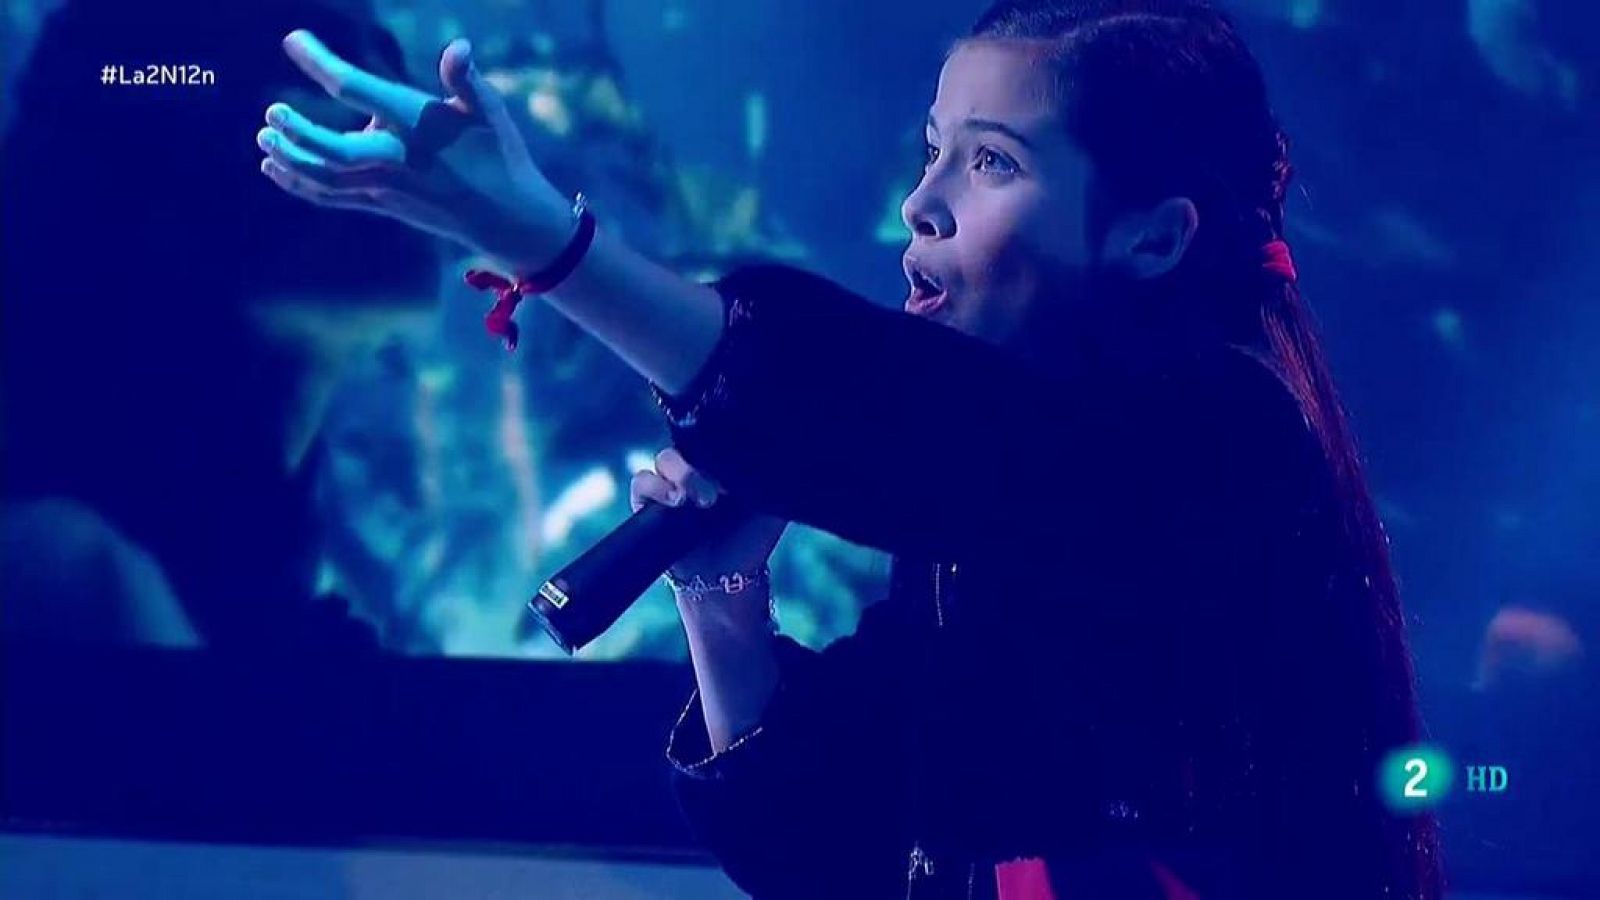 La 2 Noticias - Melani, candidata de Eurovisión Junior, canta en directo "Marte"